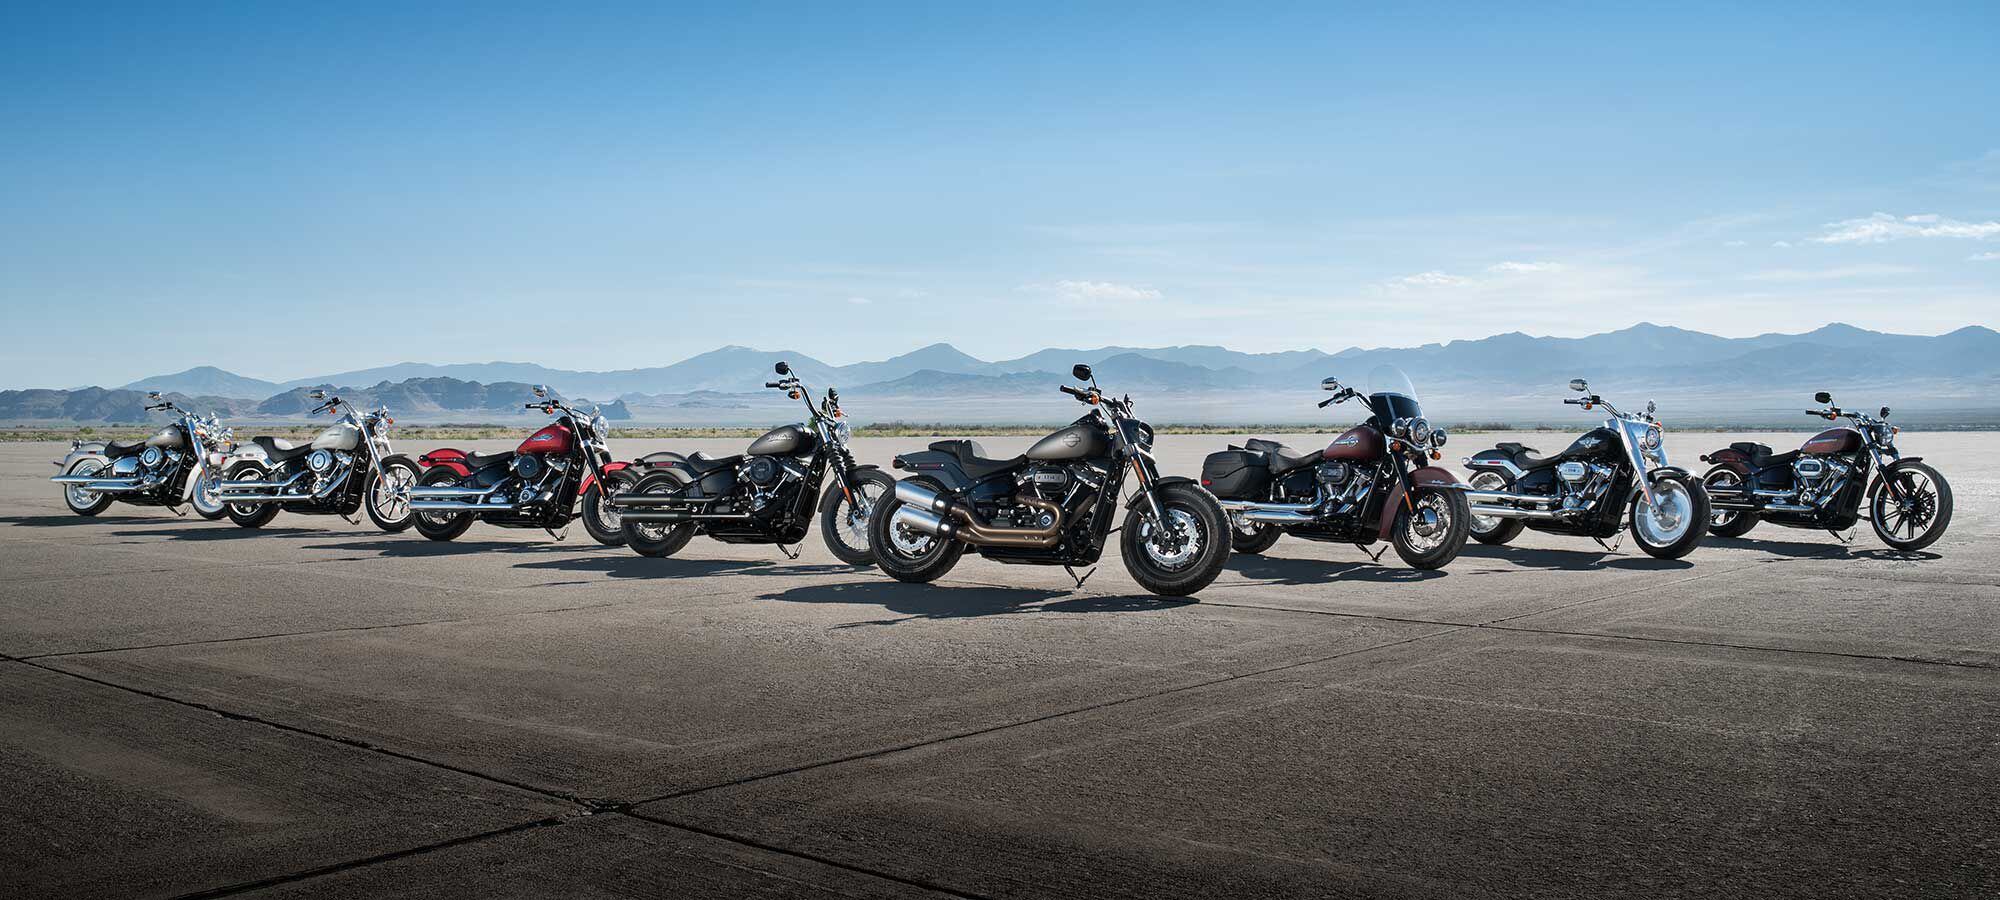 Harley Davidson Softail Models Motorcycle Cruiser